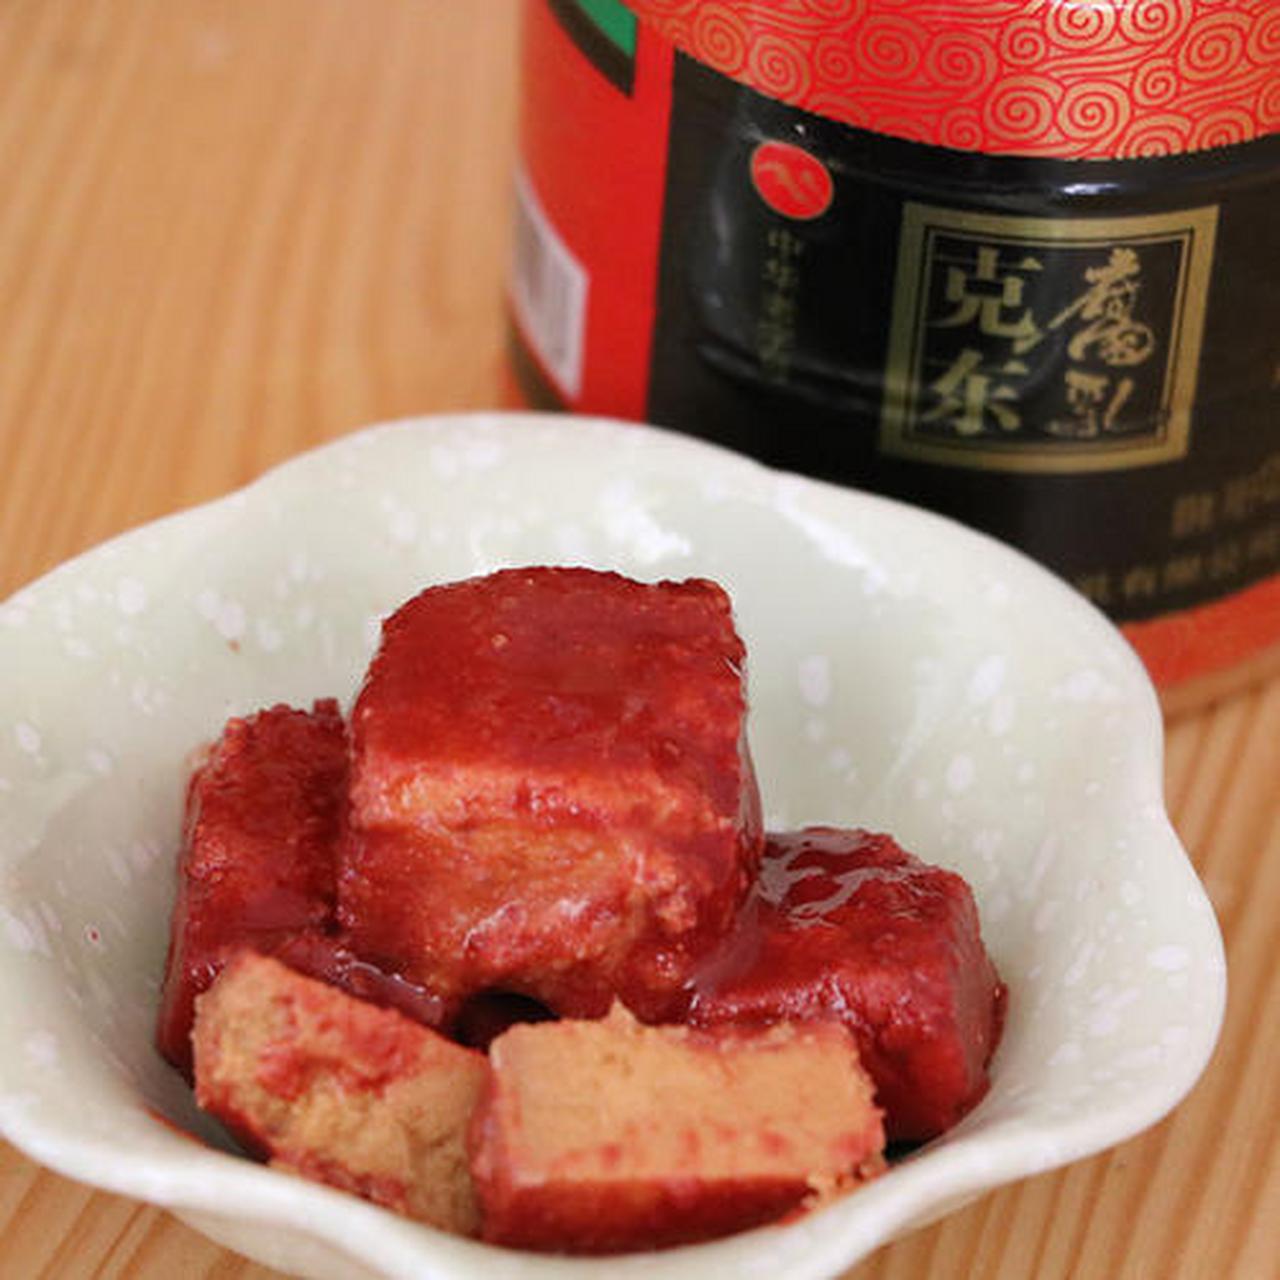 夏日限定美食#克东腐乳:克东是黑龙江著名的腐乳食品企业,也是当地的